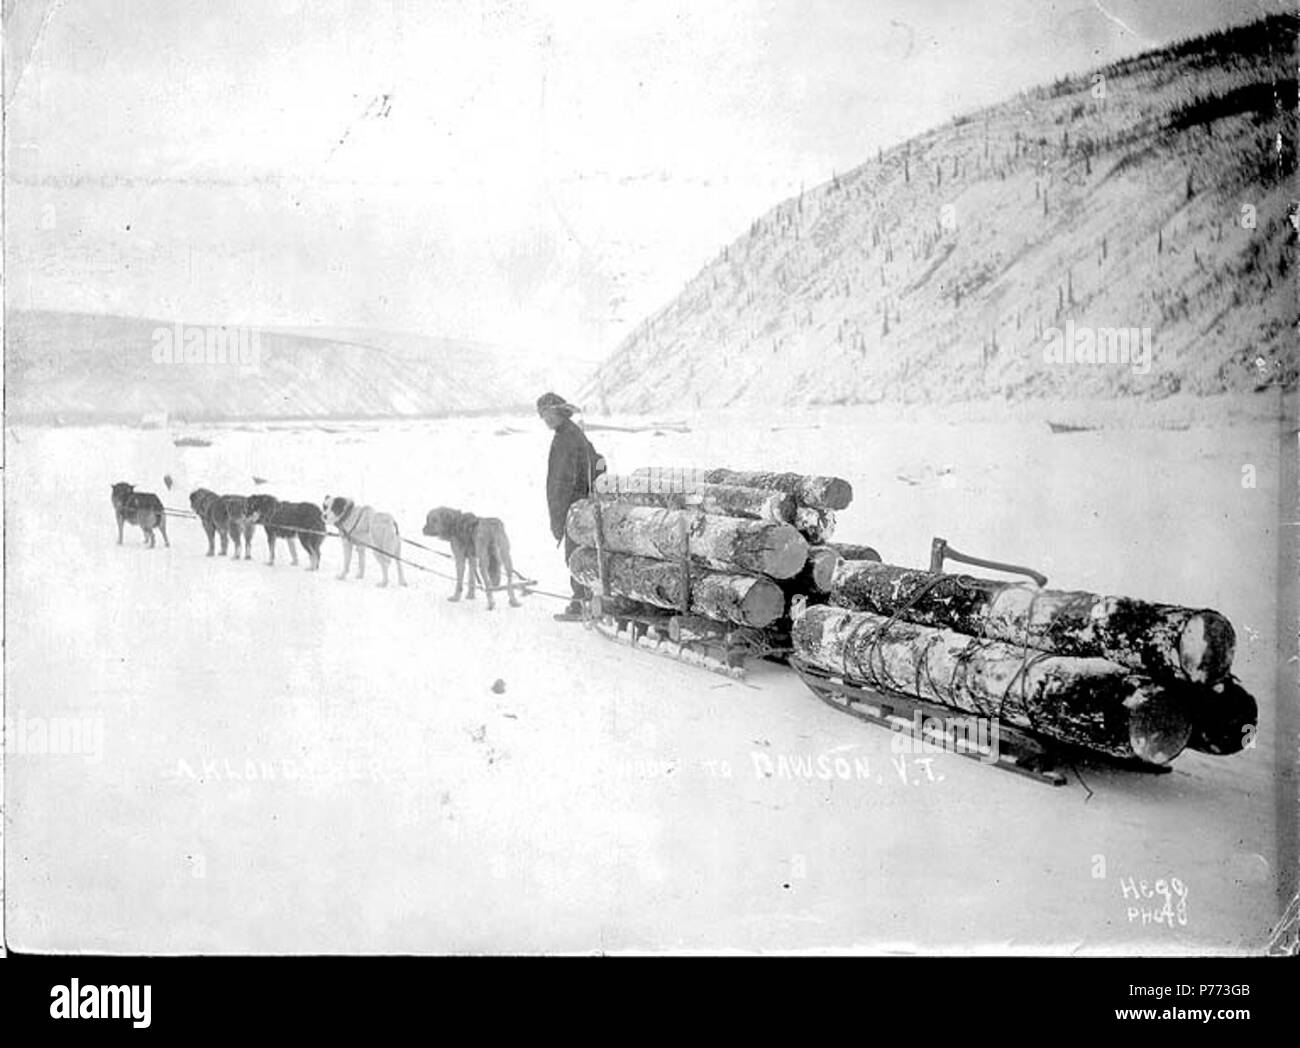 . Englisch: Klondyker schleppen Protokolle im Winter mit Hundeschlitten Team nach Dawson City, Yukon Territory, Ca. 1898. Englisch: Legende zu Bild: 'eine Klondyker schleppen Holz zu DawsonY.T.' Klondike Gold Rush. Themen (LCTGM): Schlittenhunde---- Yukon Dawson; Schlitten - - Yukon - Dawson; Log Transport---- Yukon Dawson. ca. 1898 6 Klondyker schleppen Protokolle im Winter mit Hundeschlitten Team nach Dawson City, Yukon Territory, ca 1898 HEGG (48) Stockfoto